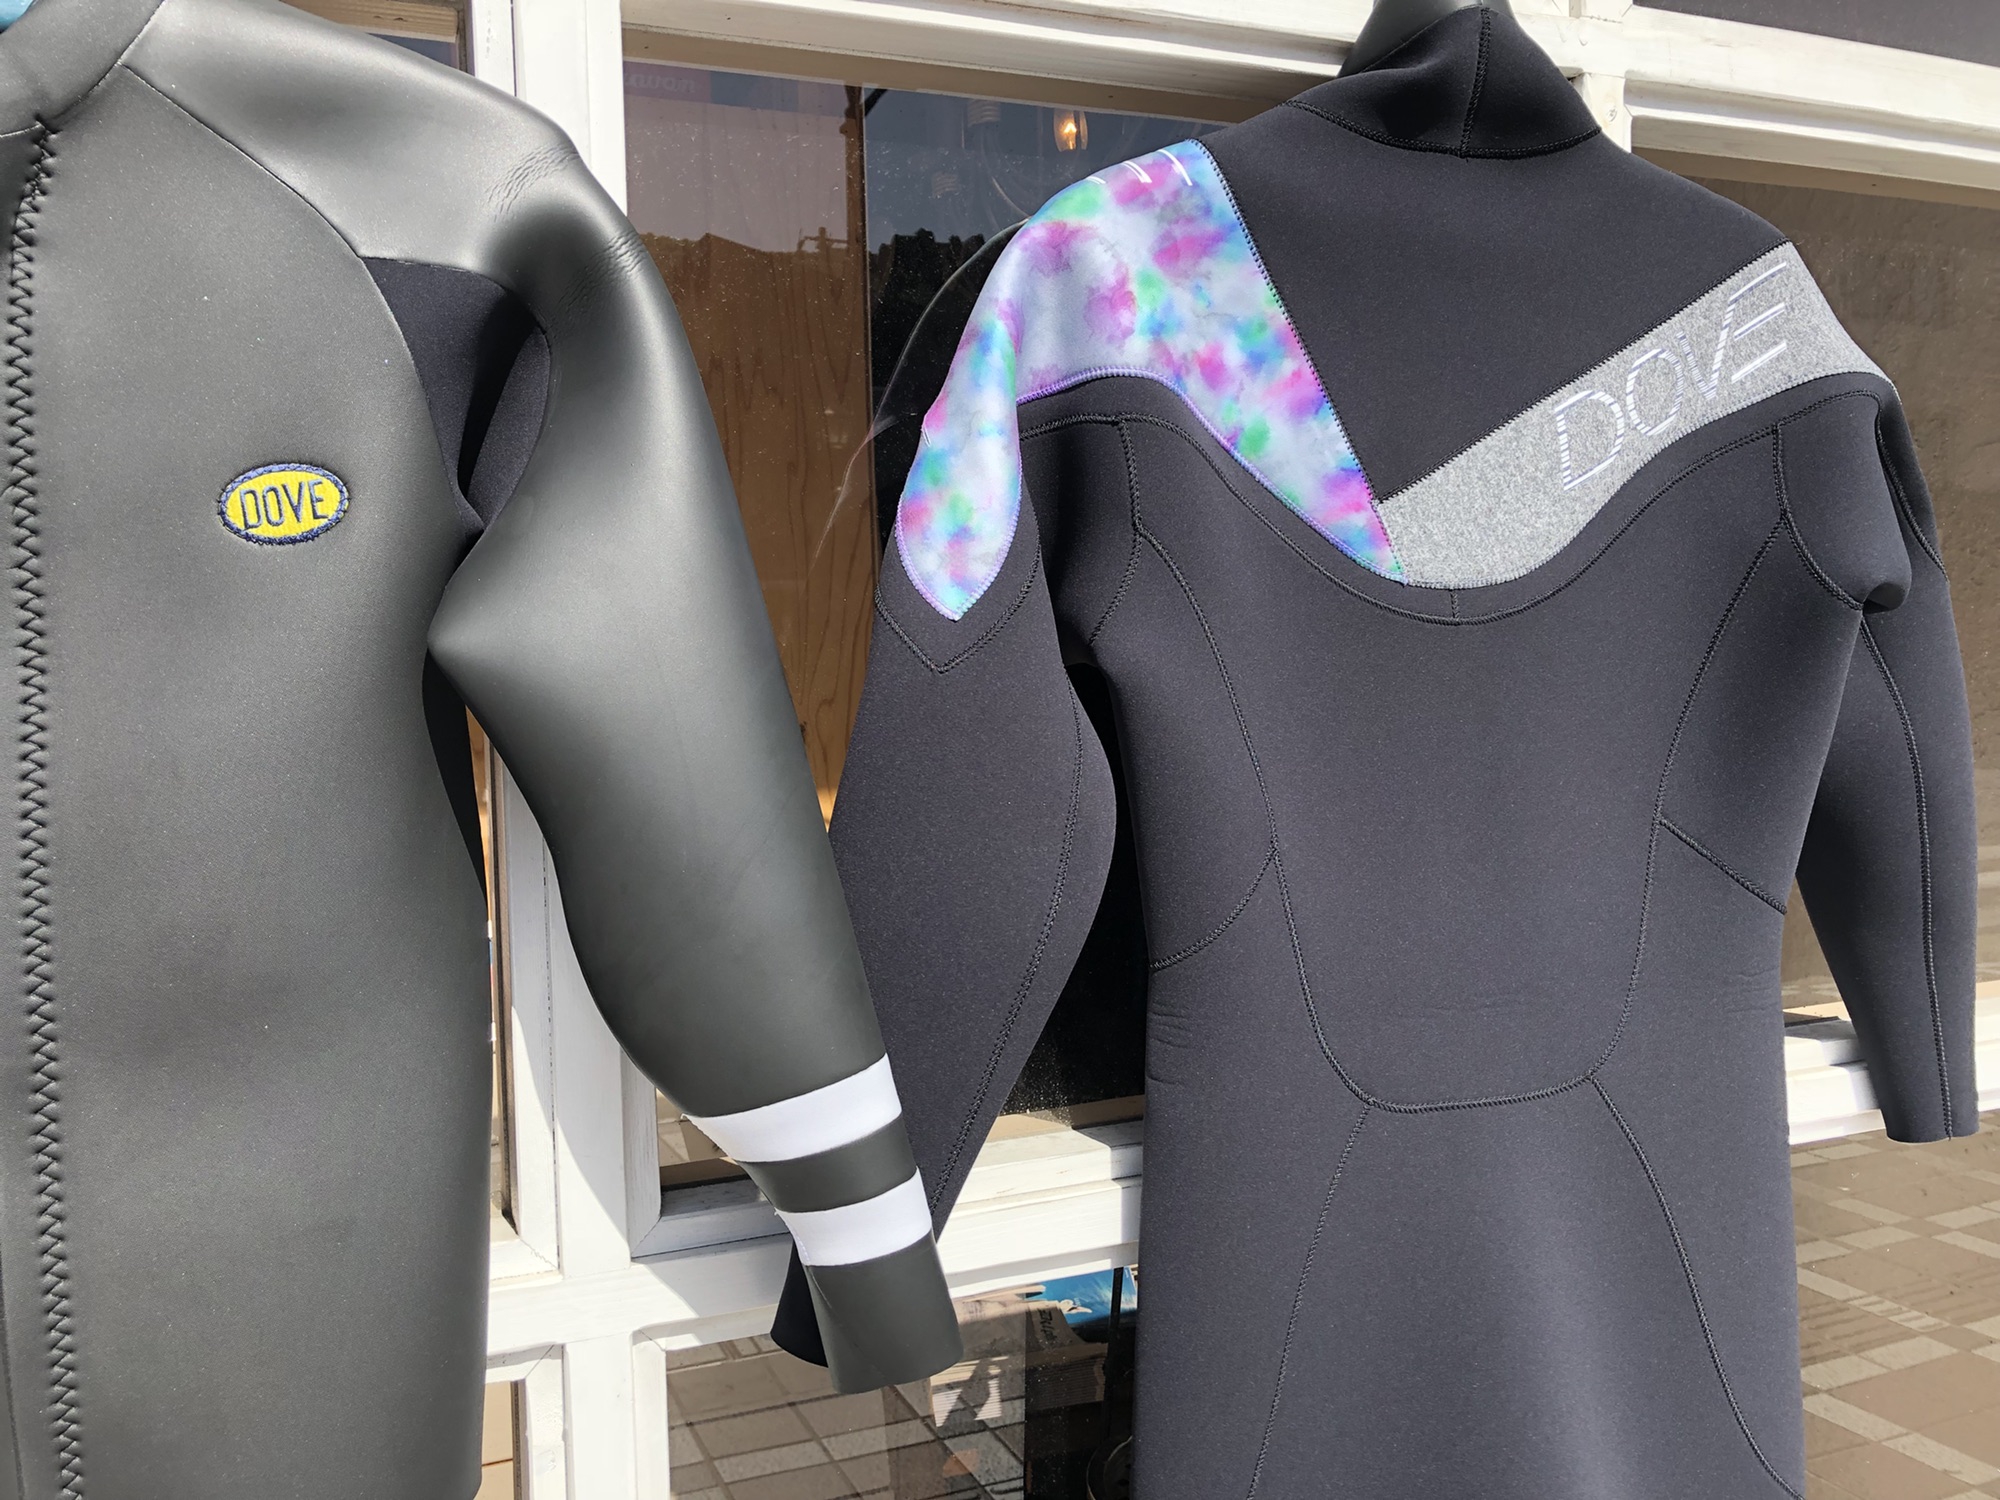 ダブウェットスーツ | サーフィン&スノーボードショップ サーズデイズ徳島